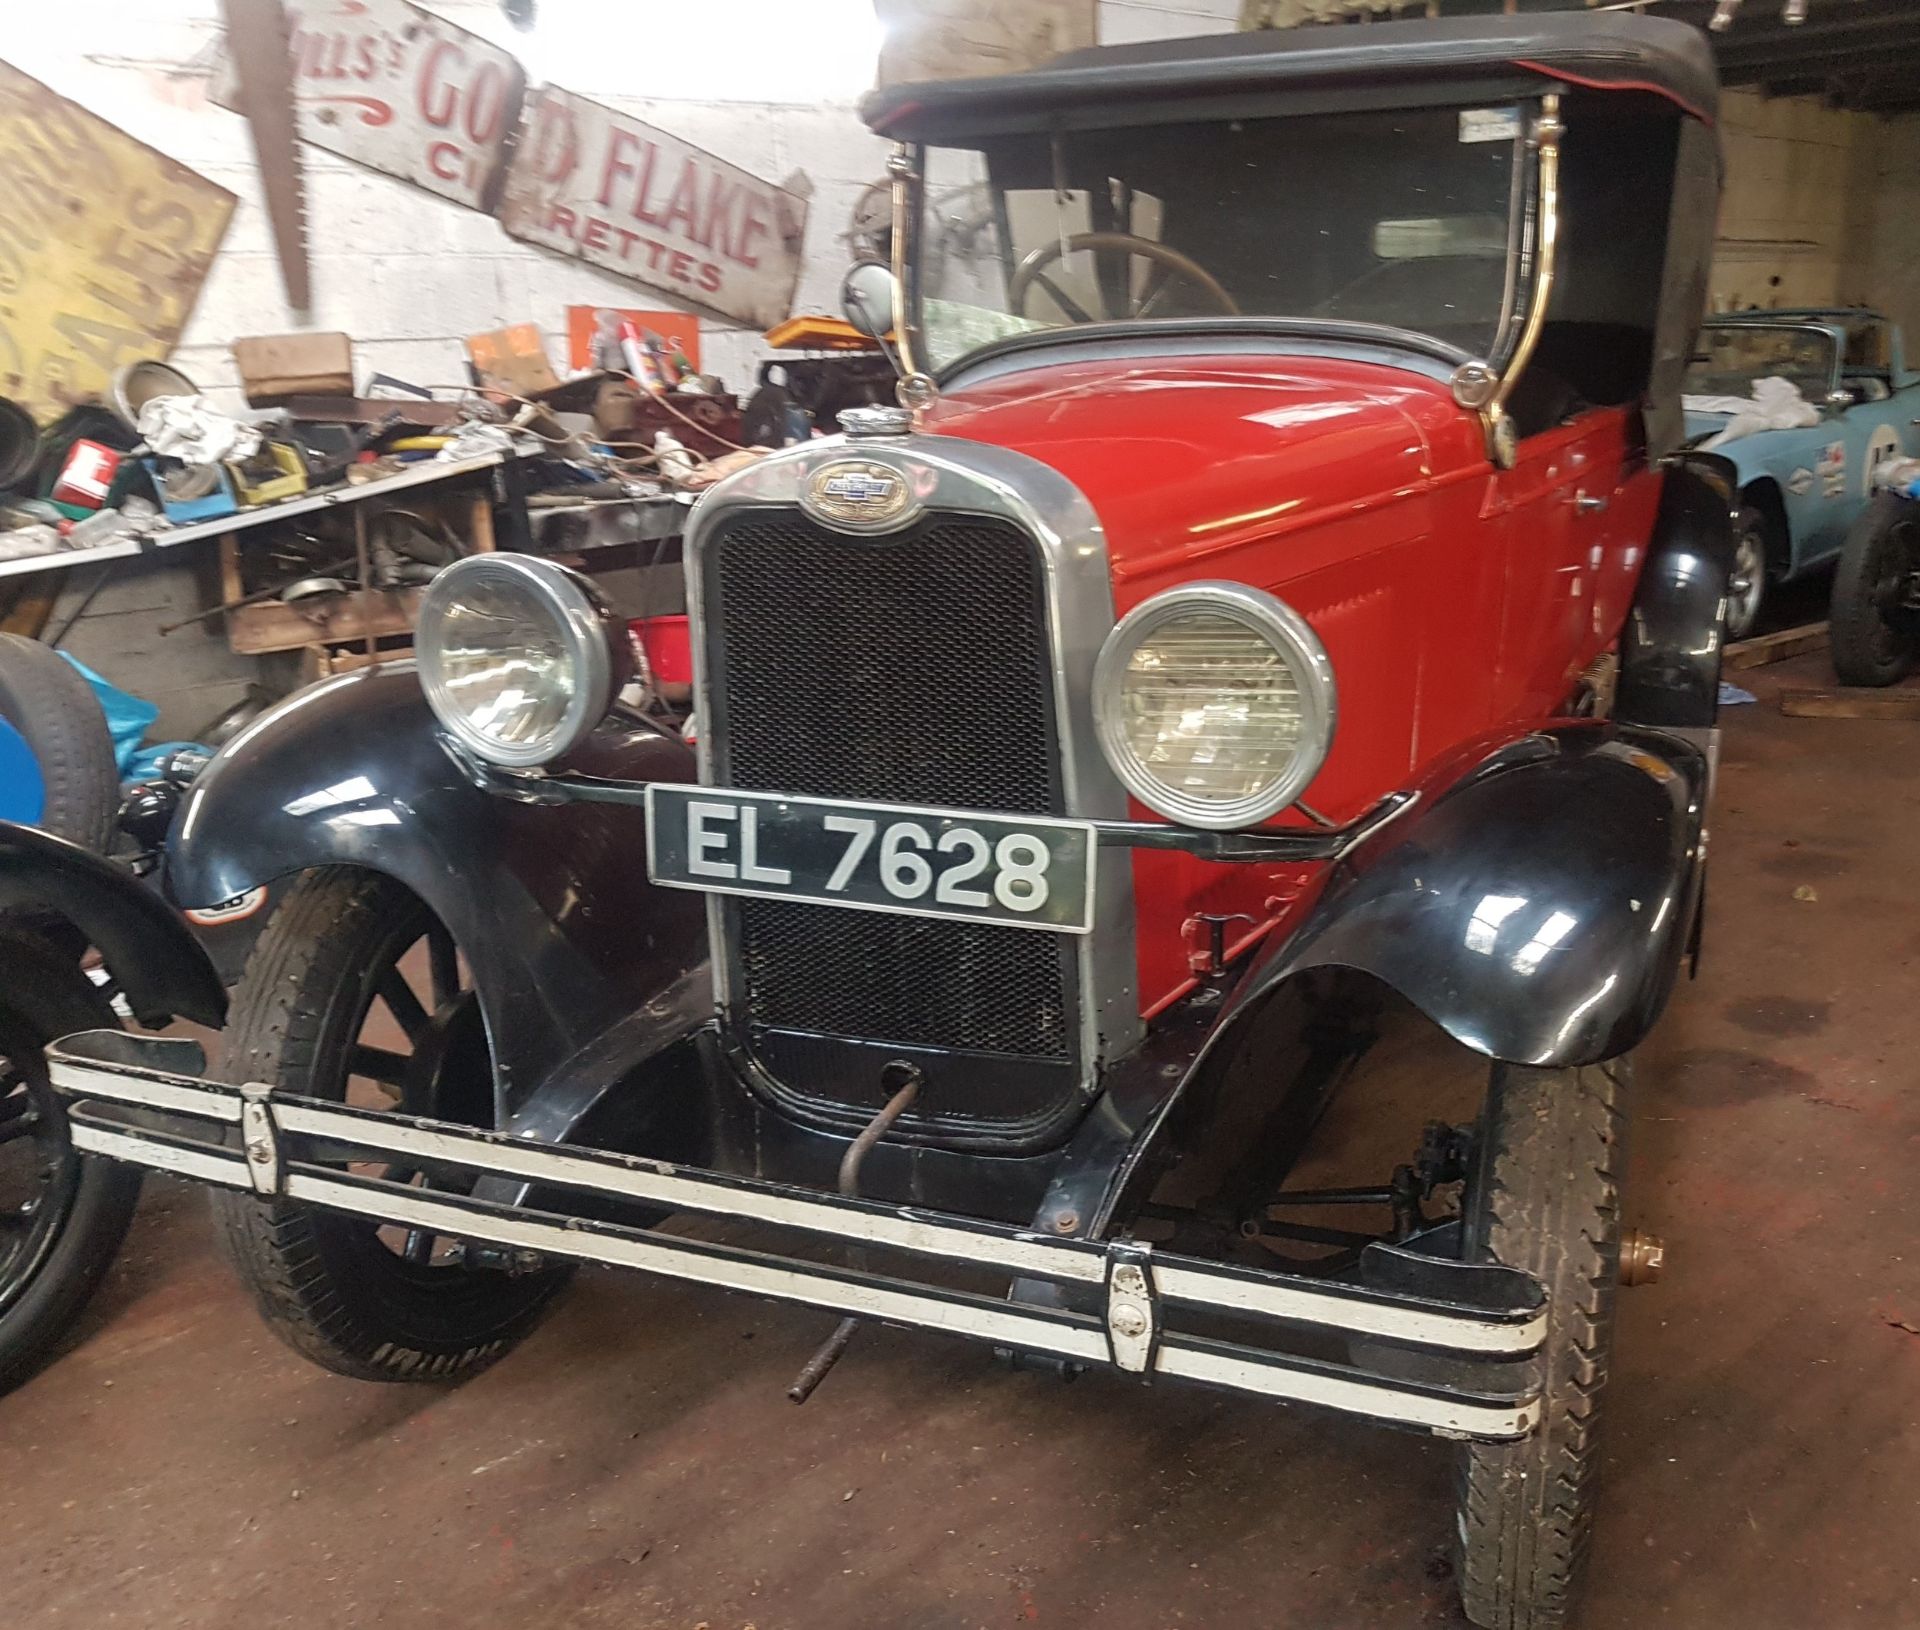 1928 Chevrolet Tourer Registration number EL 7628 Red with a black leather interior Originally - Image 3 of 7